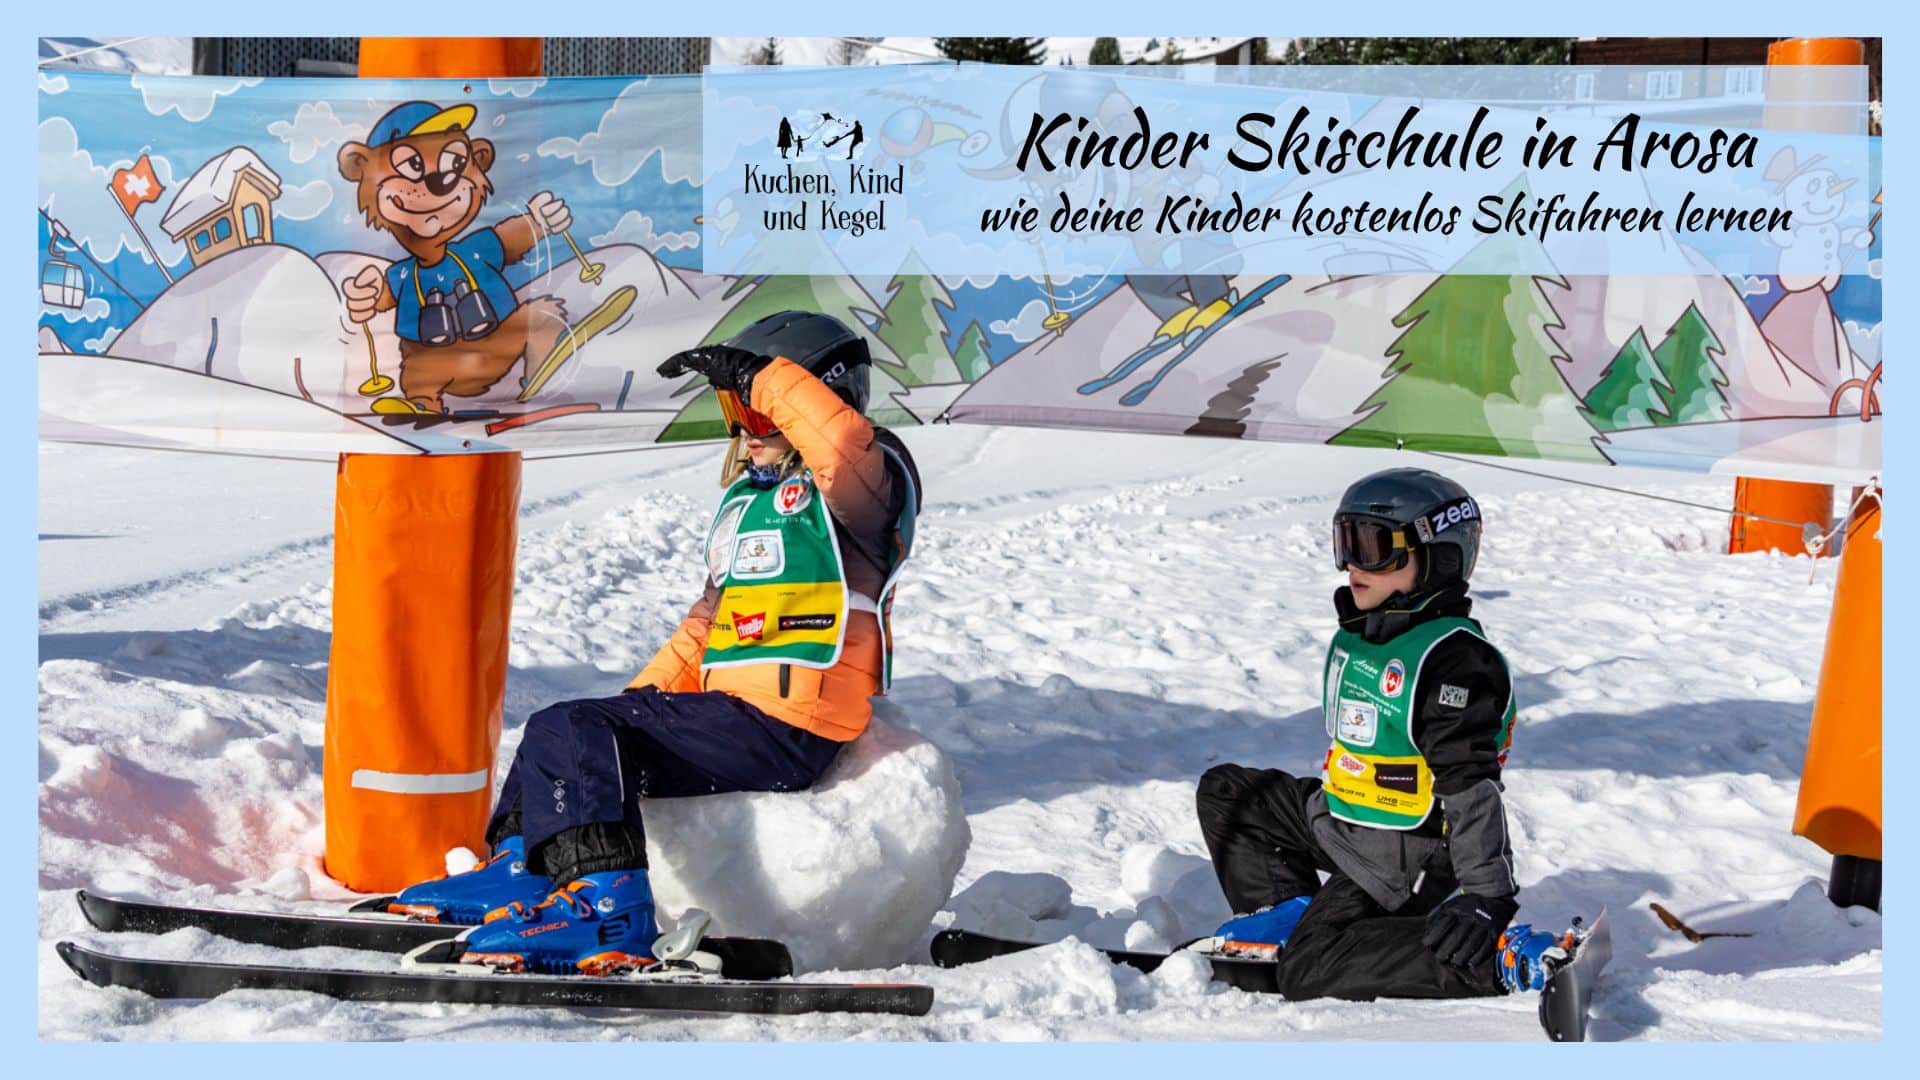 Arosa Kinder Skischule – wie deine Kinder kostenlos Skifahren lernen